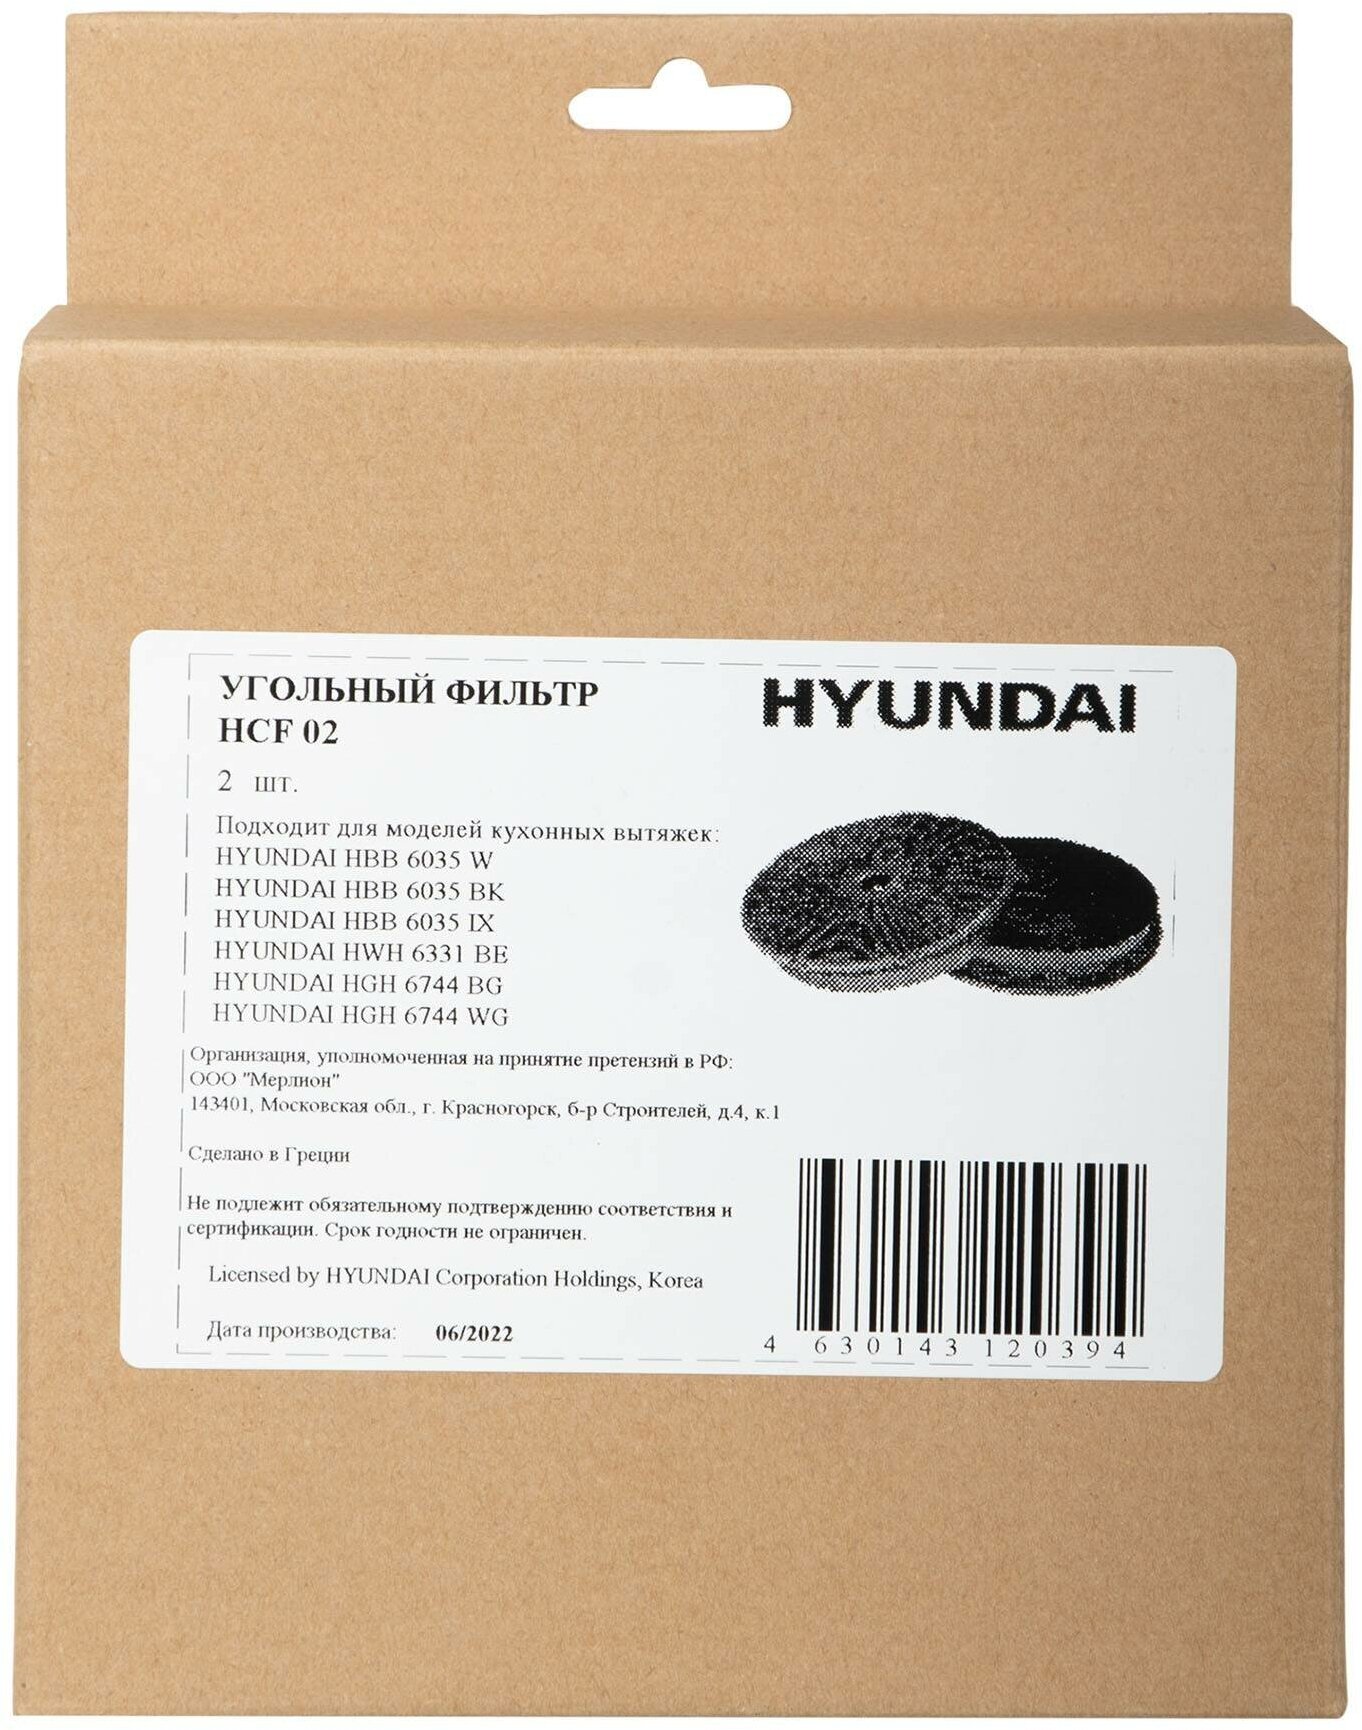 Комплект фильтров Hyundai HCF 02 черный, в комплекте 2шт. - фото №8